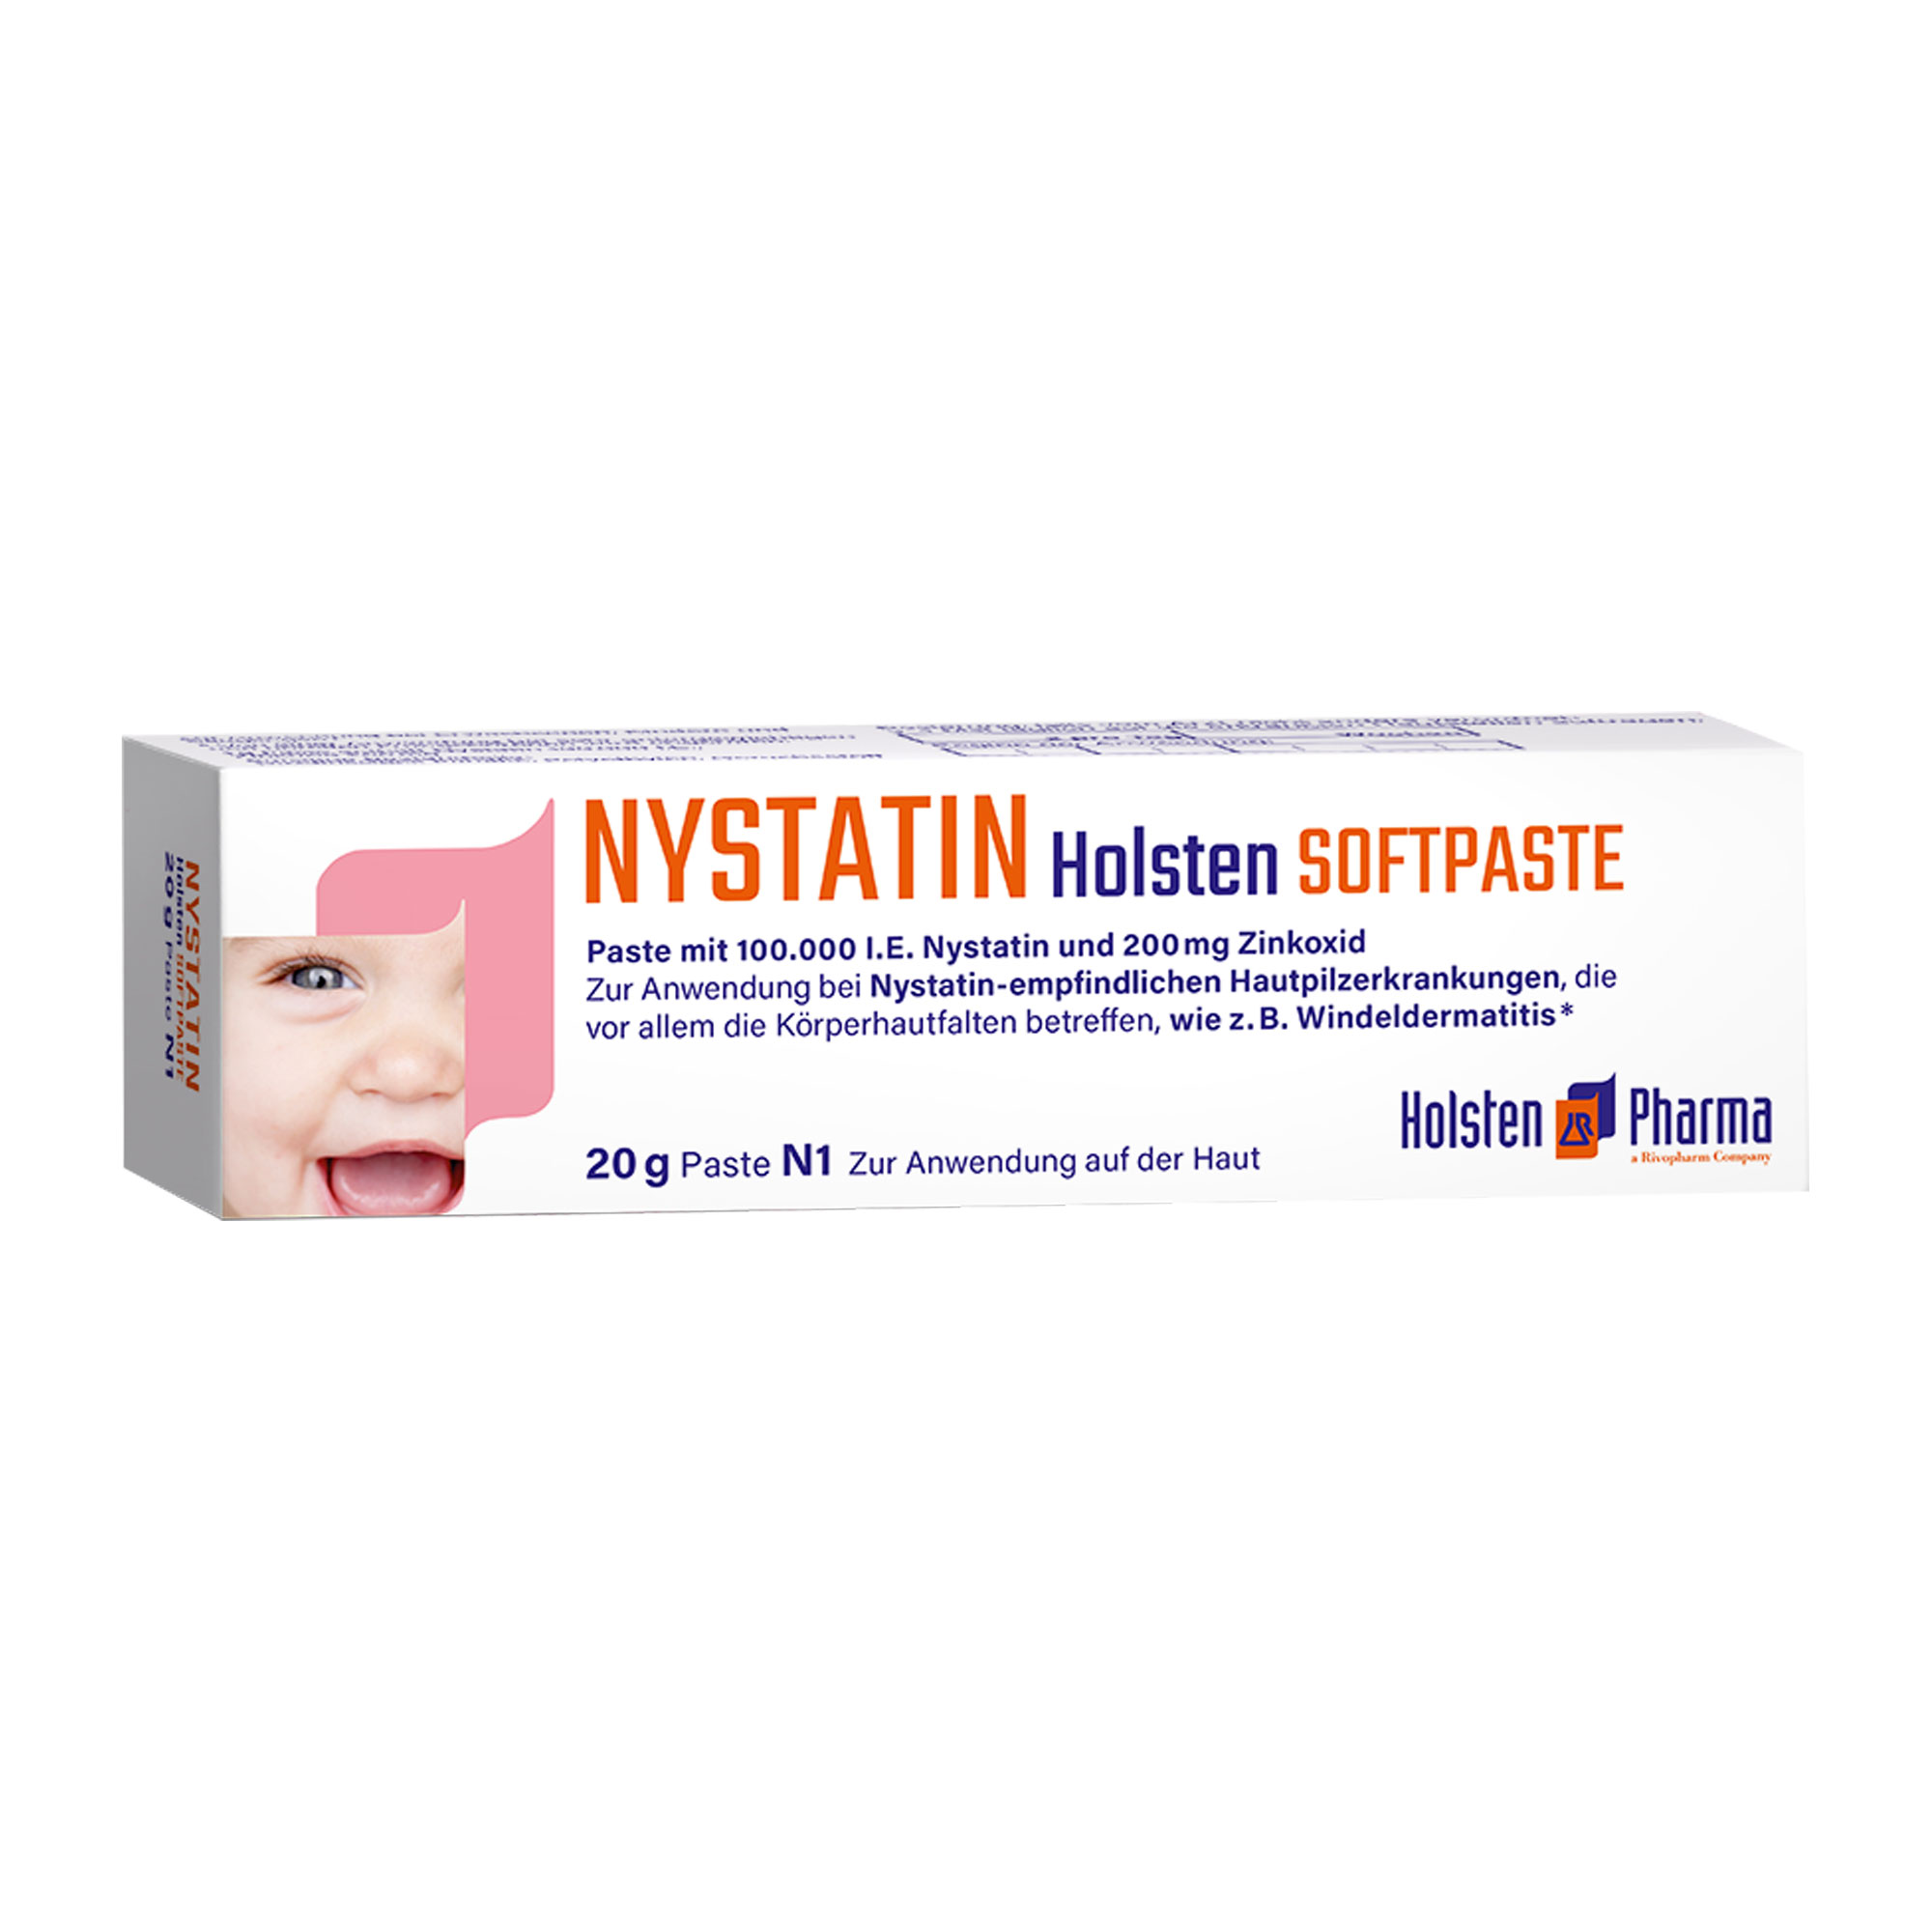 Mit Nystatin und Zinkoxid zur Anwendung bei Hautpilzerkrankungen.